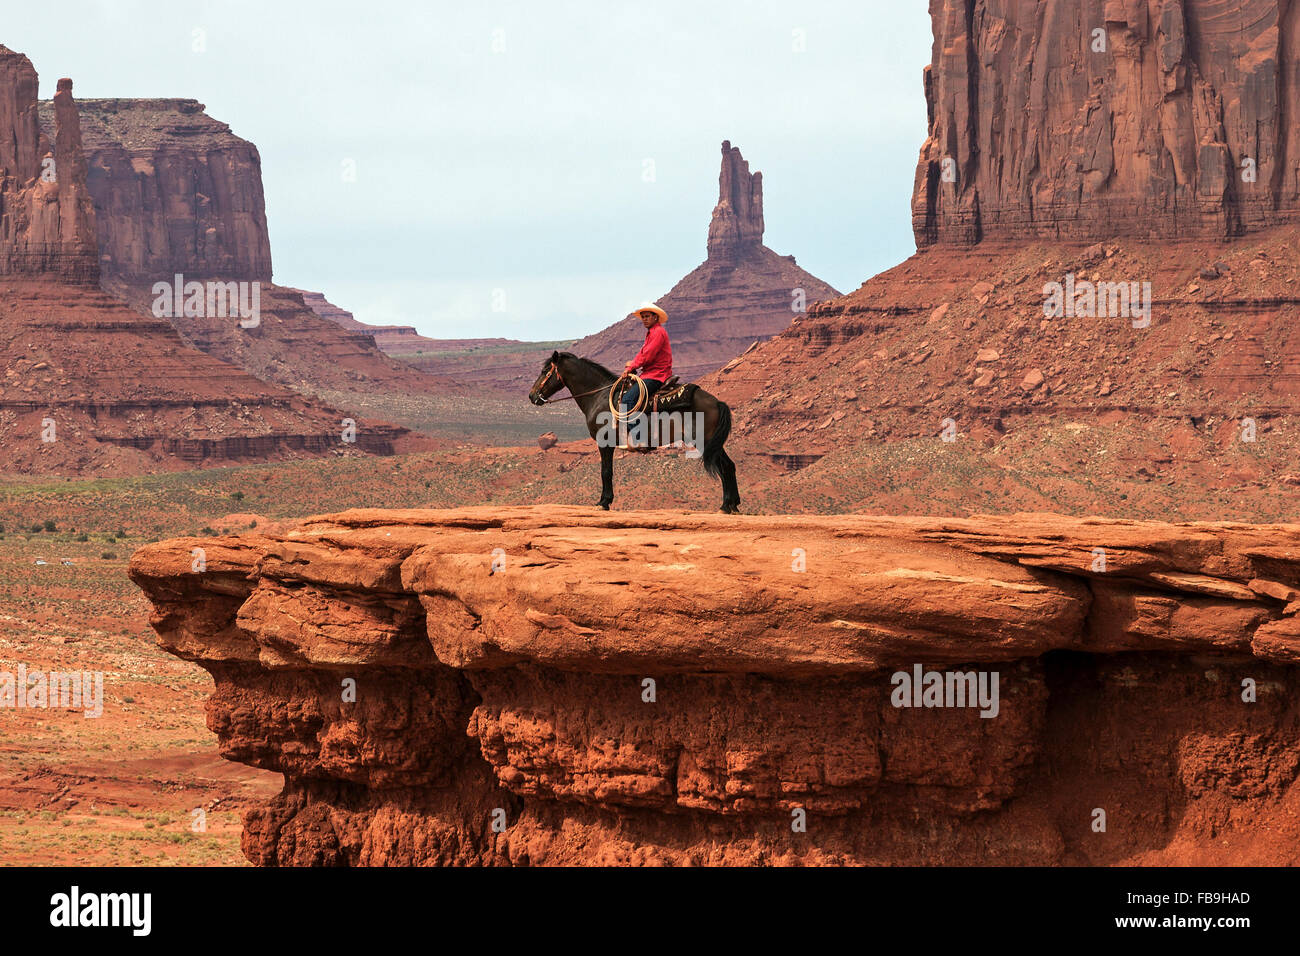 Des formations rocheuses, à cheval sur les Indiens John Wayne Point, Monument Valley Navajo Tribal Park, Arizona, USA Banque D'Images